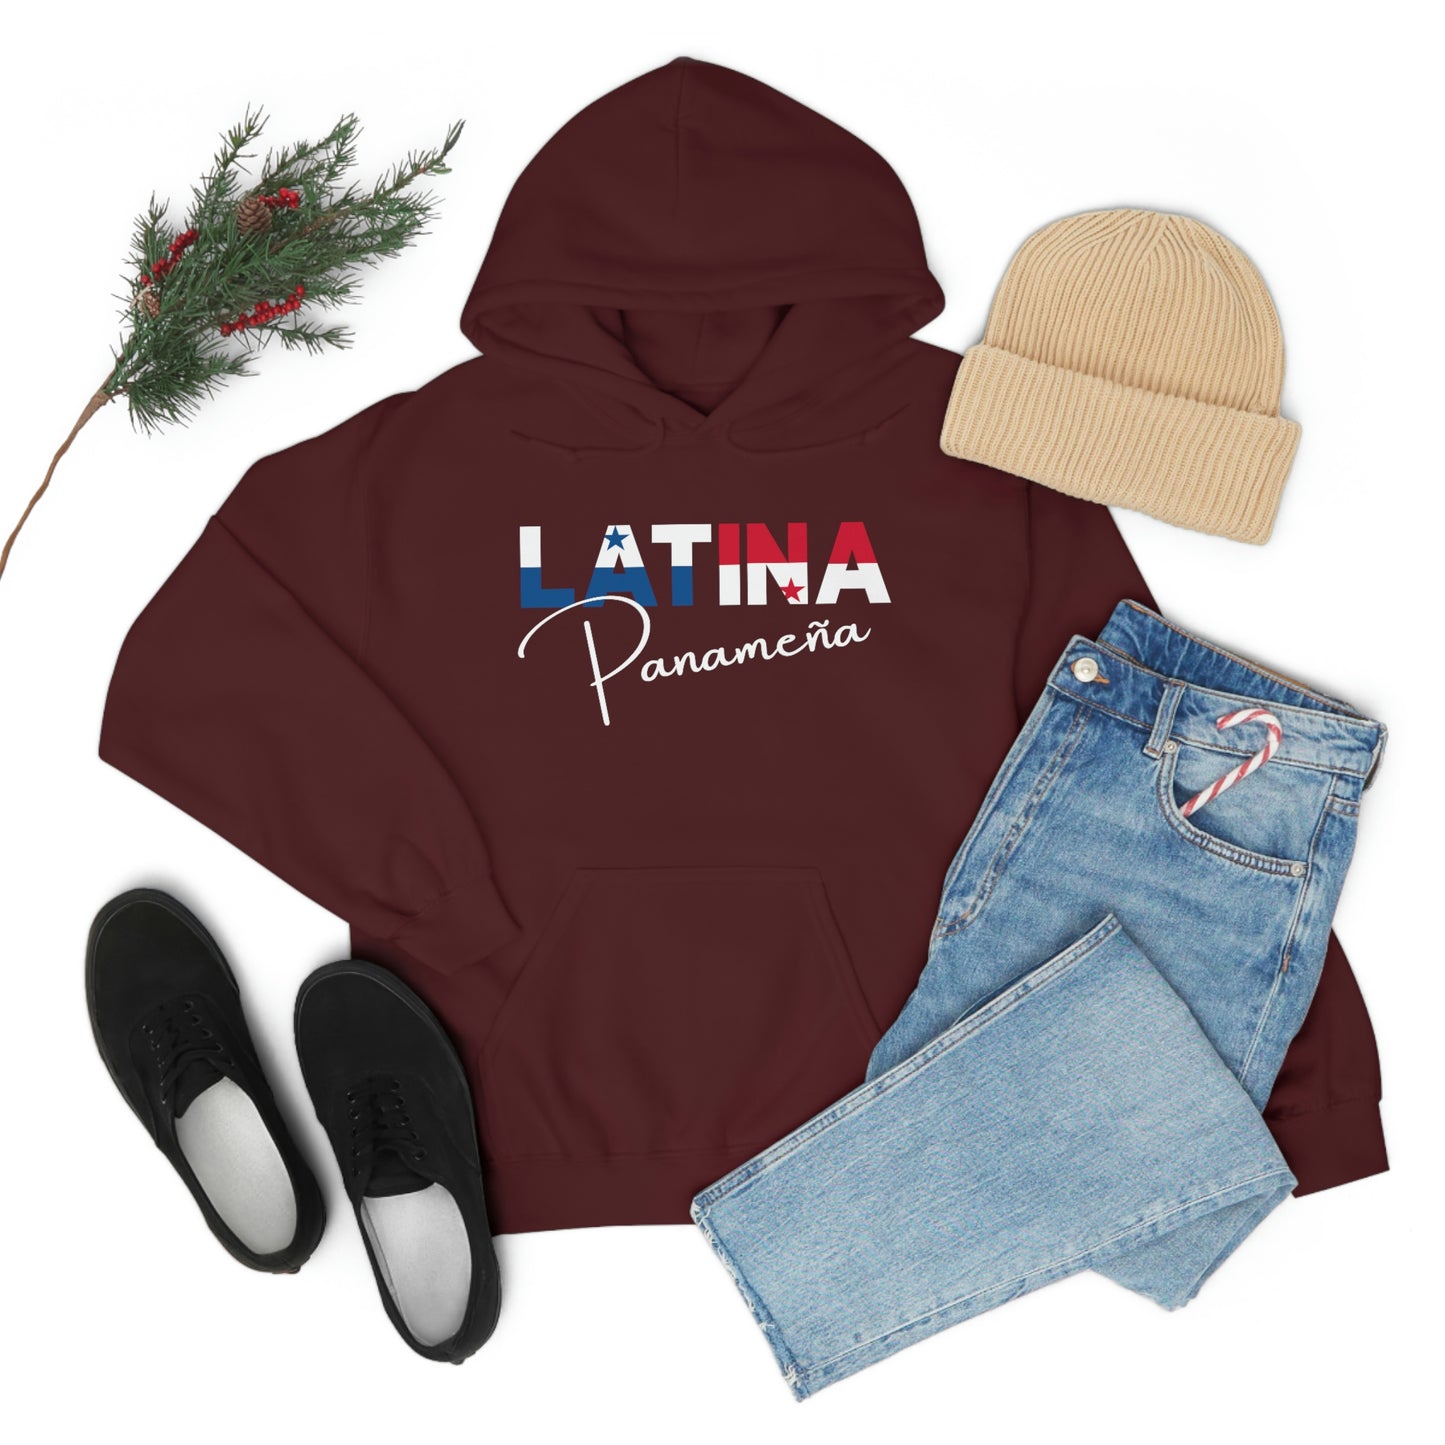 Latina Panameña, Hoodie